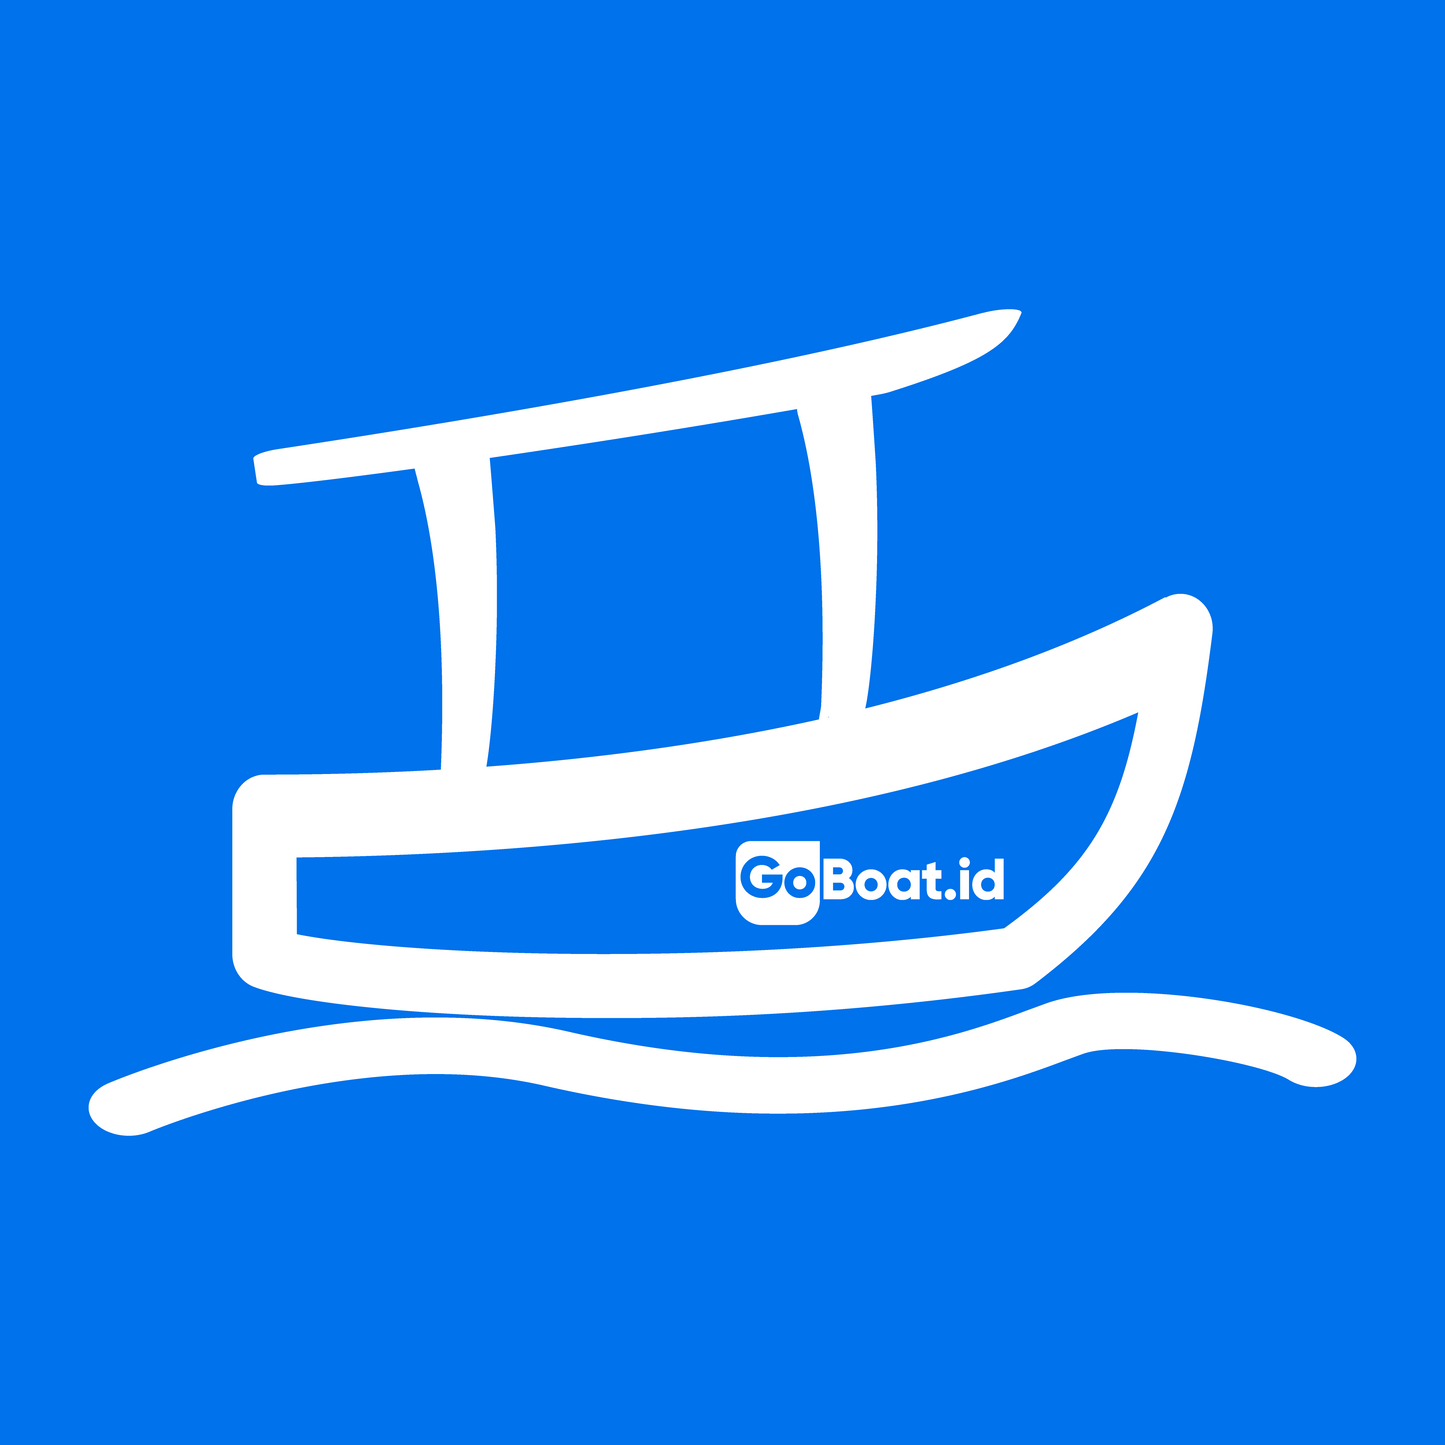 Uluwatu ➞ Canggu - GoBoat in 40 minutes, Skip the traffic, Go by boat